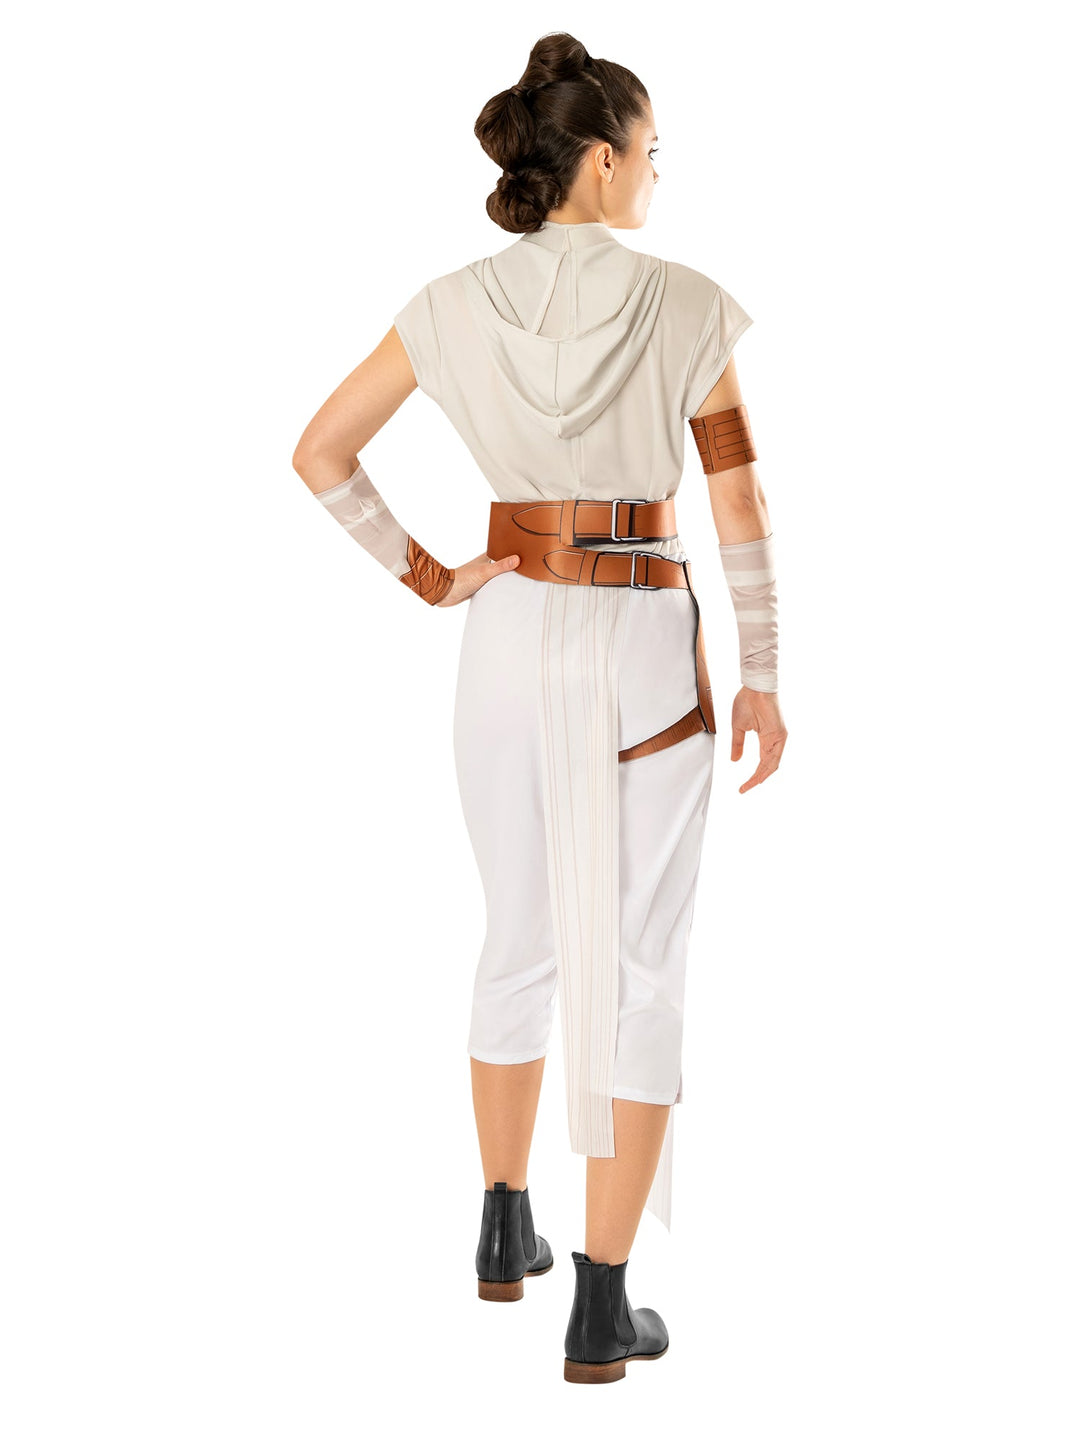 Adult Rey Costume Episode IX Star Wars Rise of Skywalker_2